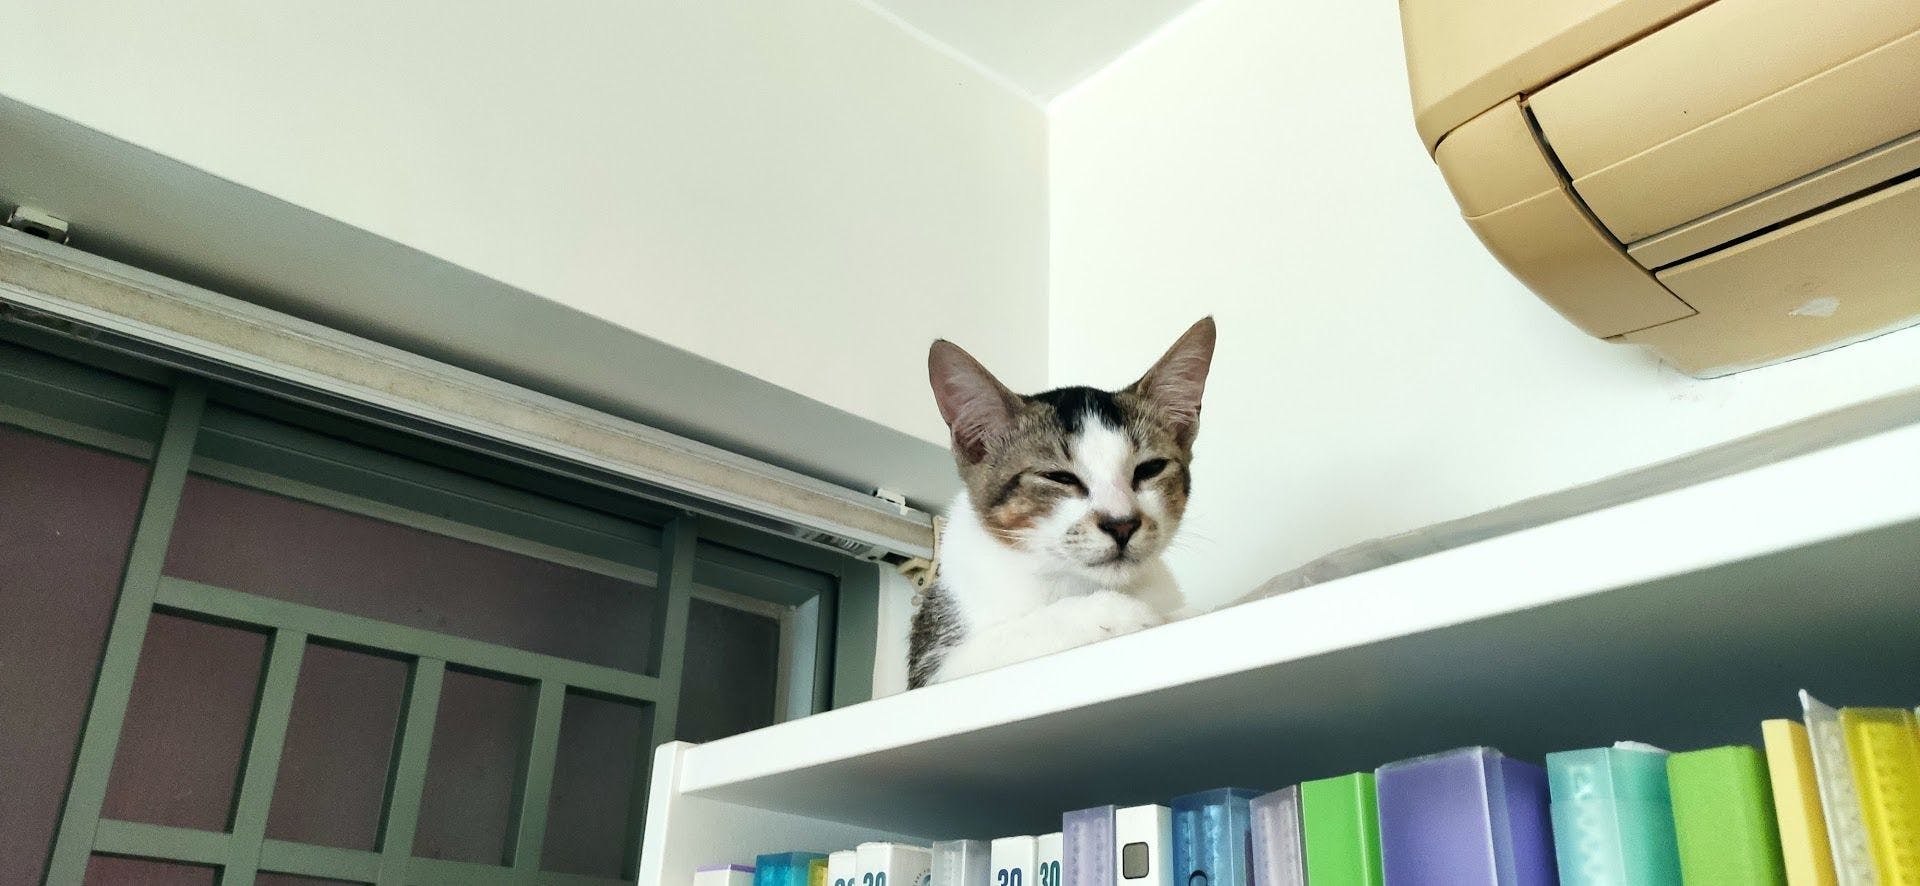 Sesame having some "me" time up the bookshelf